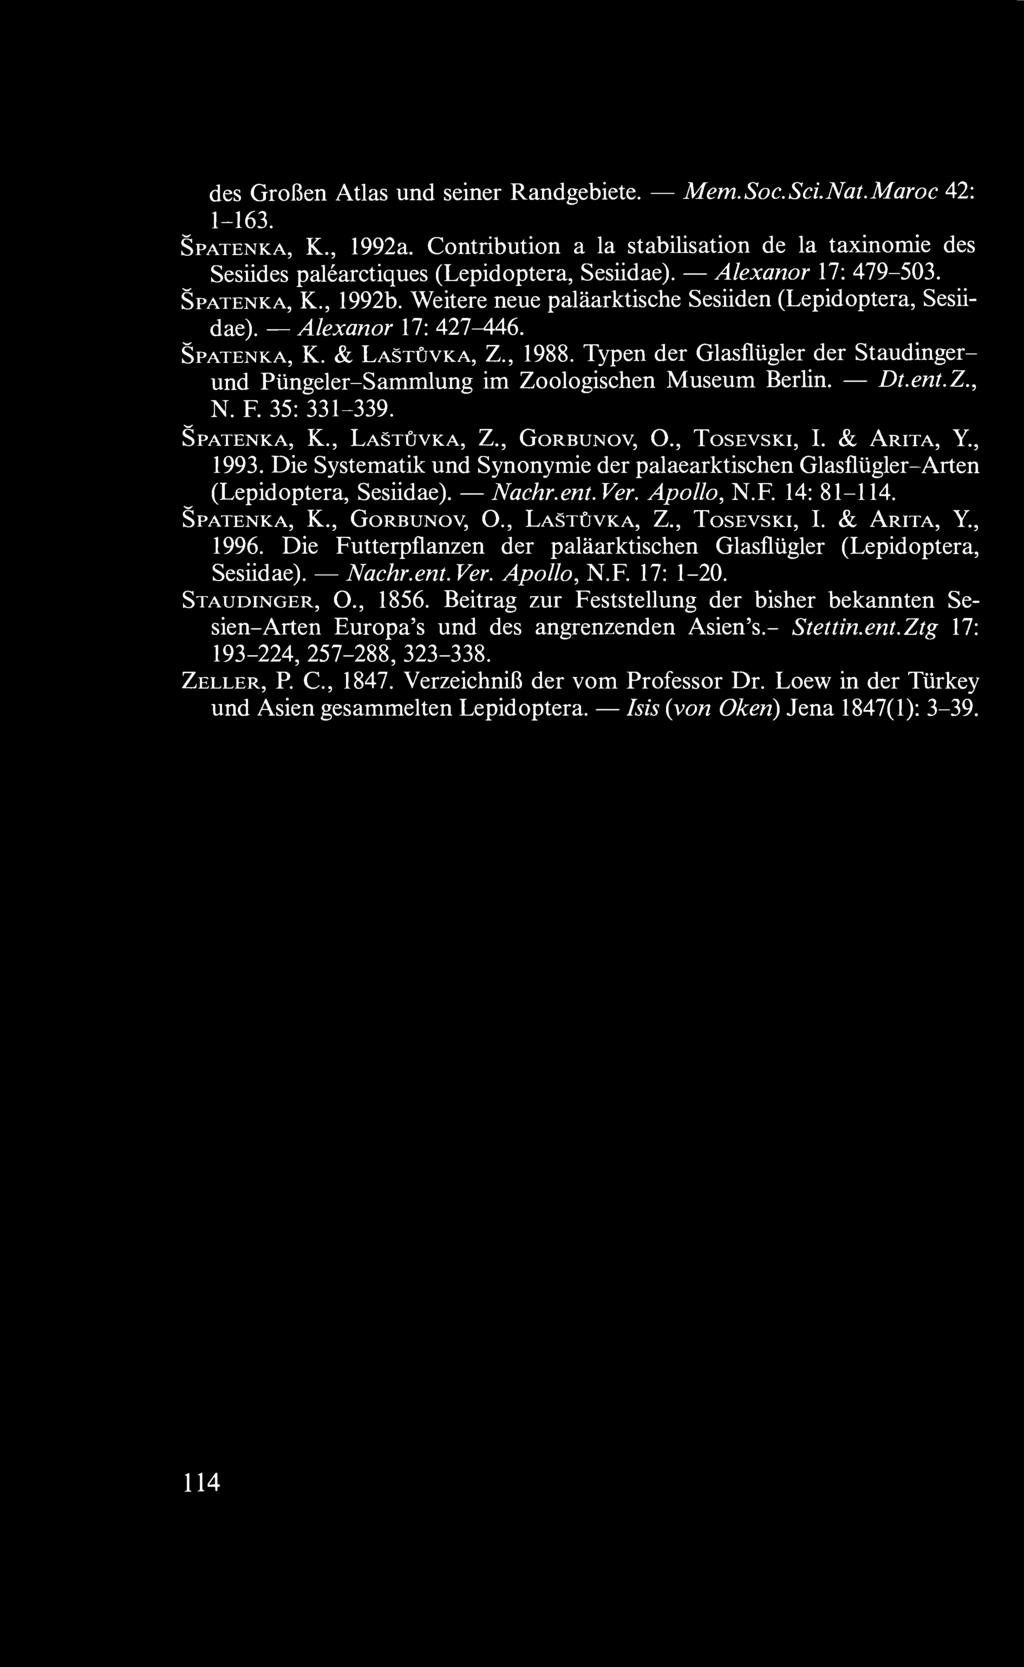 Typen der Glasflügler der Staudinger- Dt.ent.Z., und Püngeler-Sammlung im Zoologischen Museum Berlin. N. F. 35: 331-339. Spatenka, K., Lastûvka, Z., Gorbunov, O., Tosevski, I. & Arita, Y., 1993.